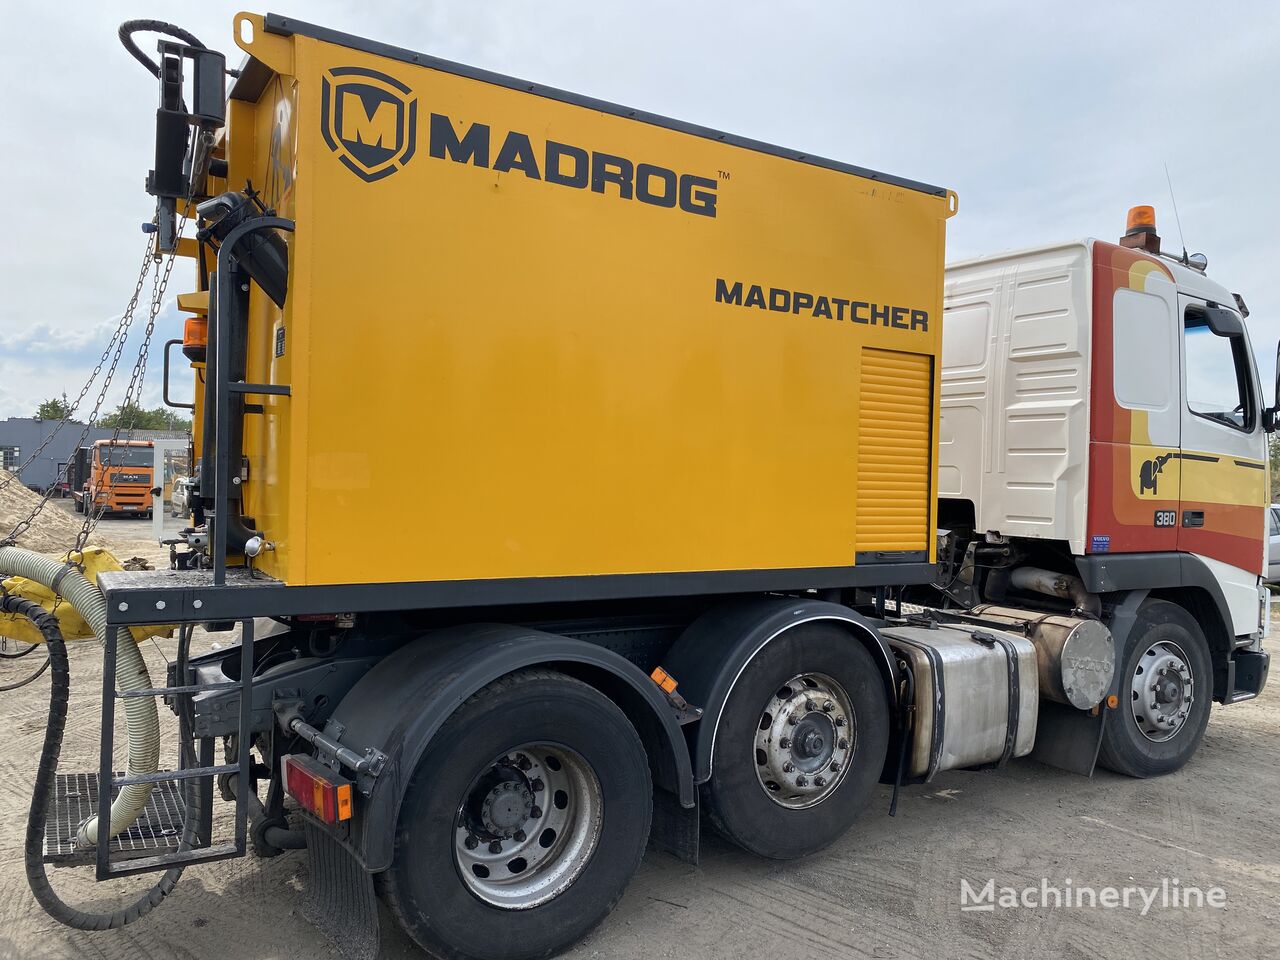 Madrog PATCHER MPA6,5W Remonter Drogowy distribuidor de asfalto